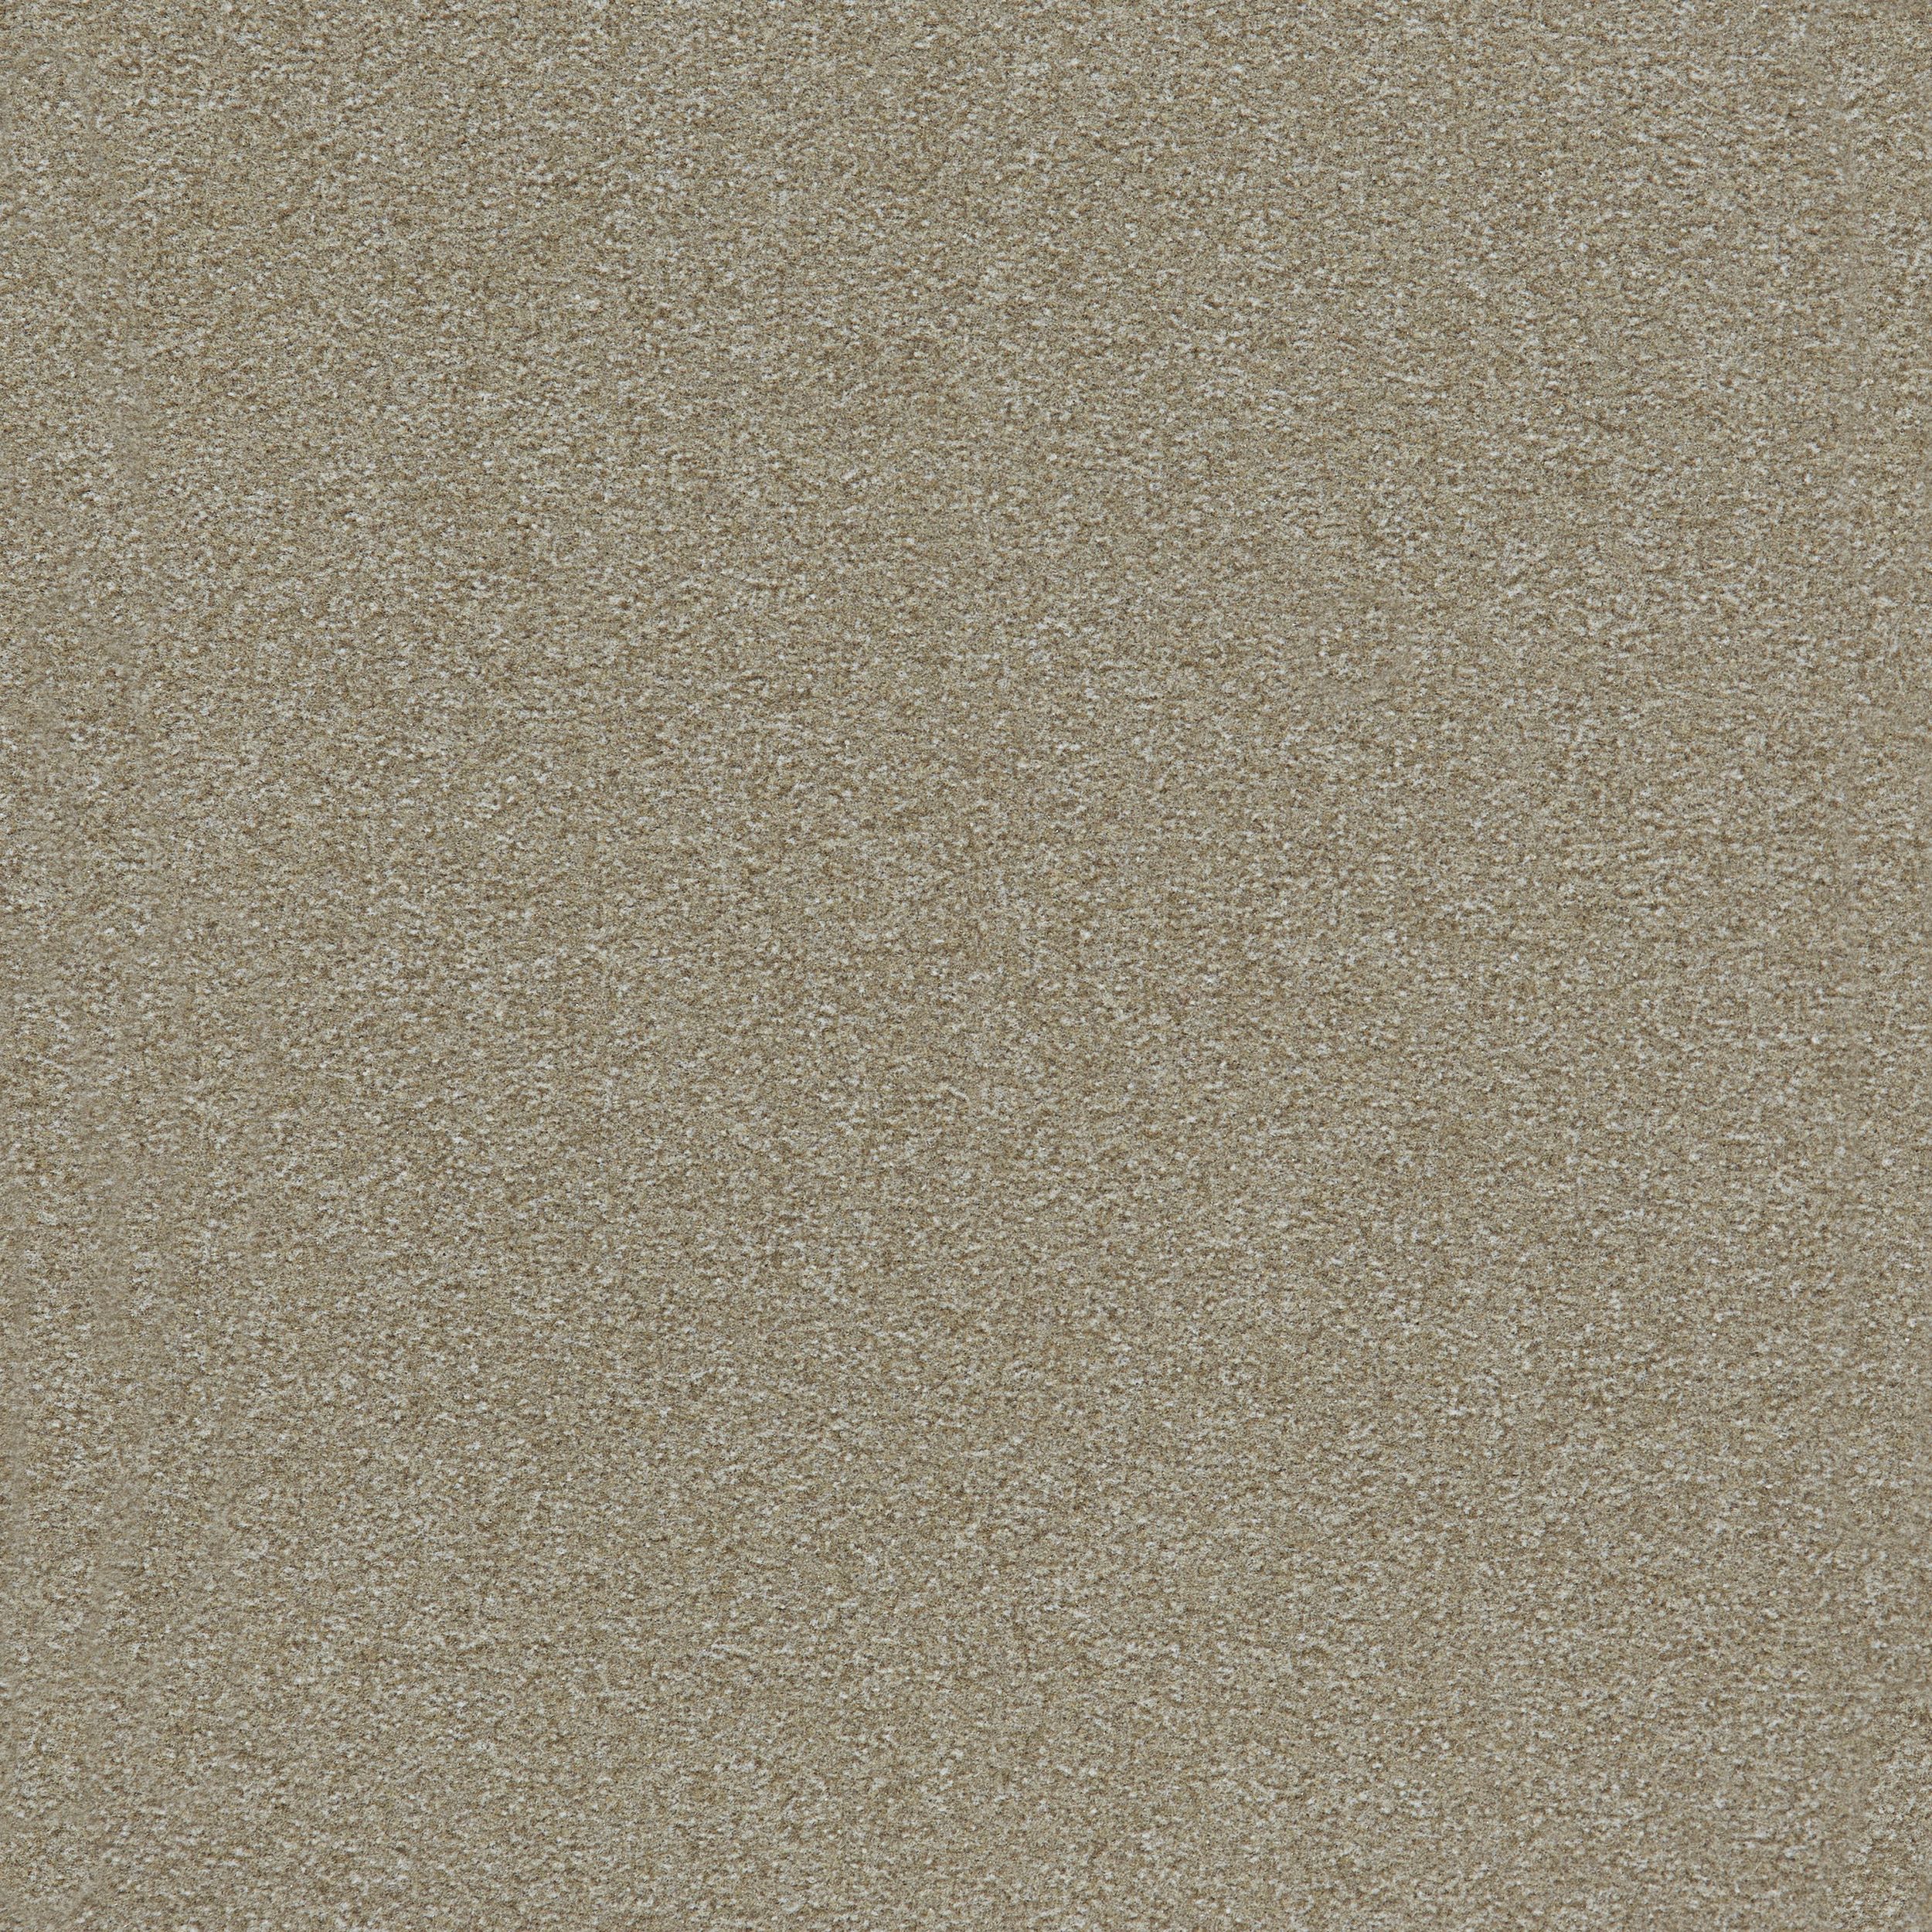 Heuga 725 Carpet Tile In Oyster número de imagen 4